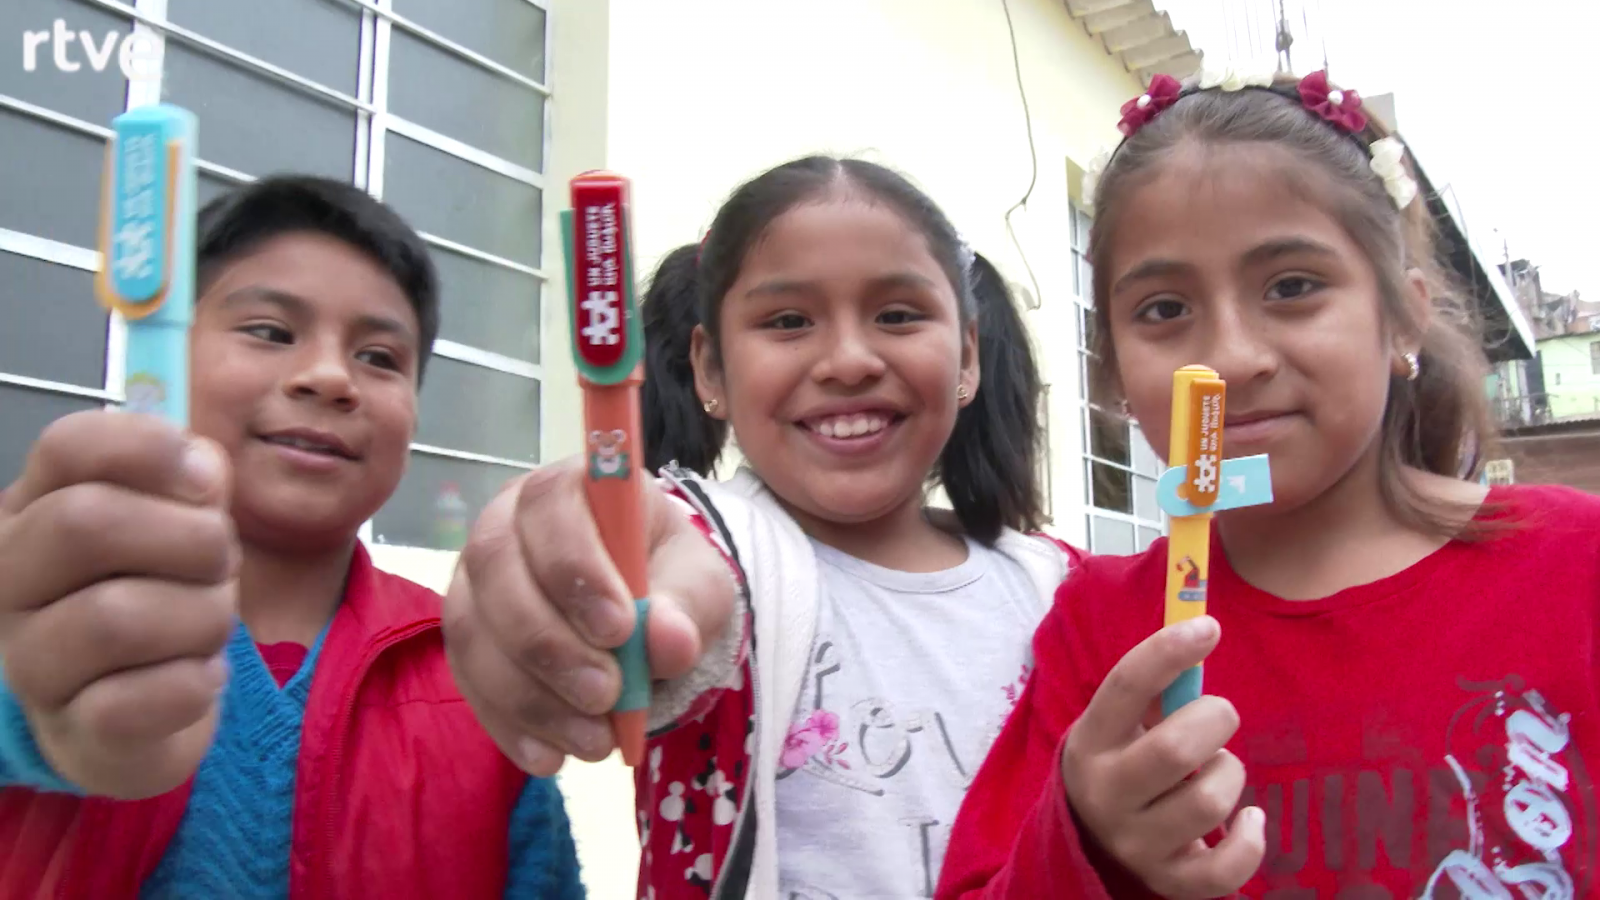 La campaña Un juguete, una ilusión entrega juguetes en Perú